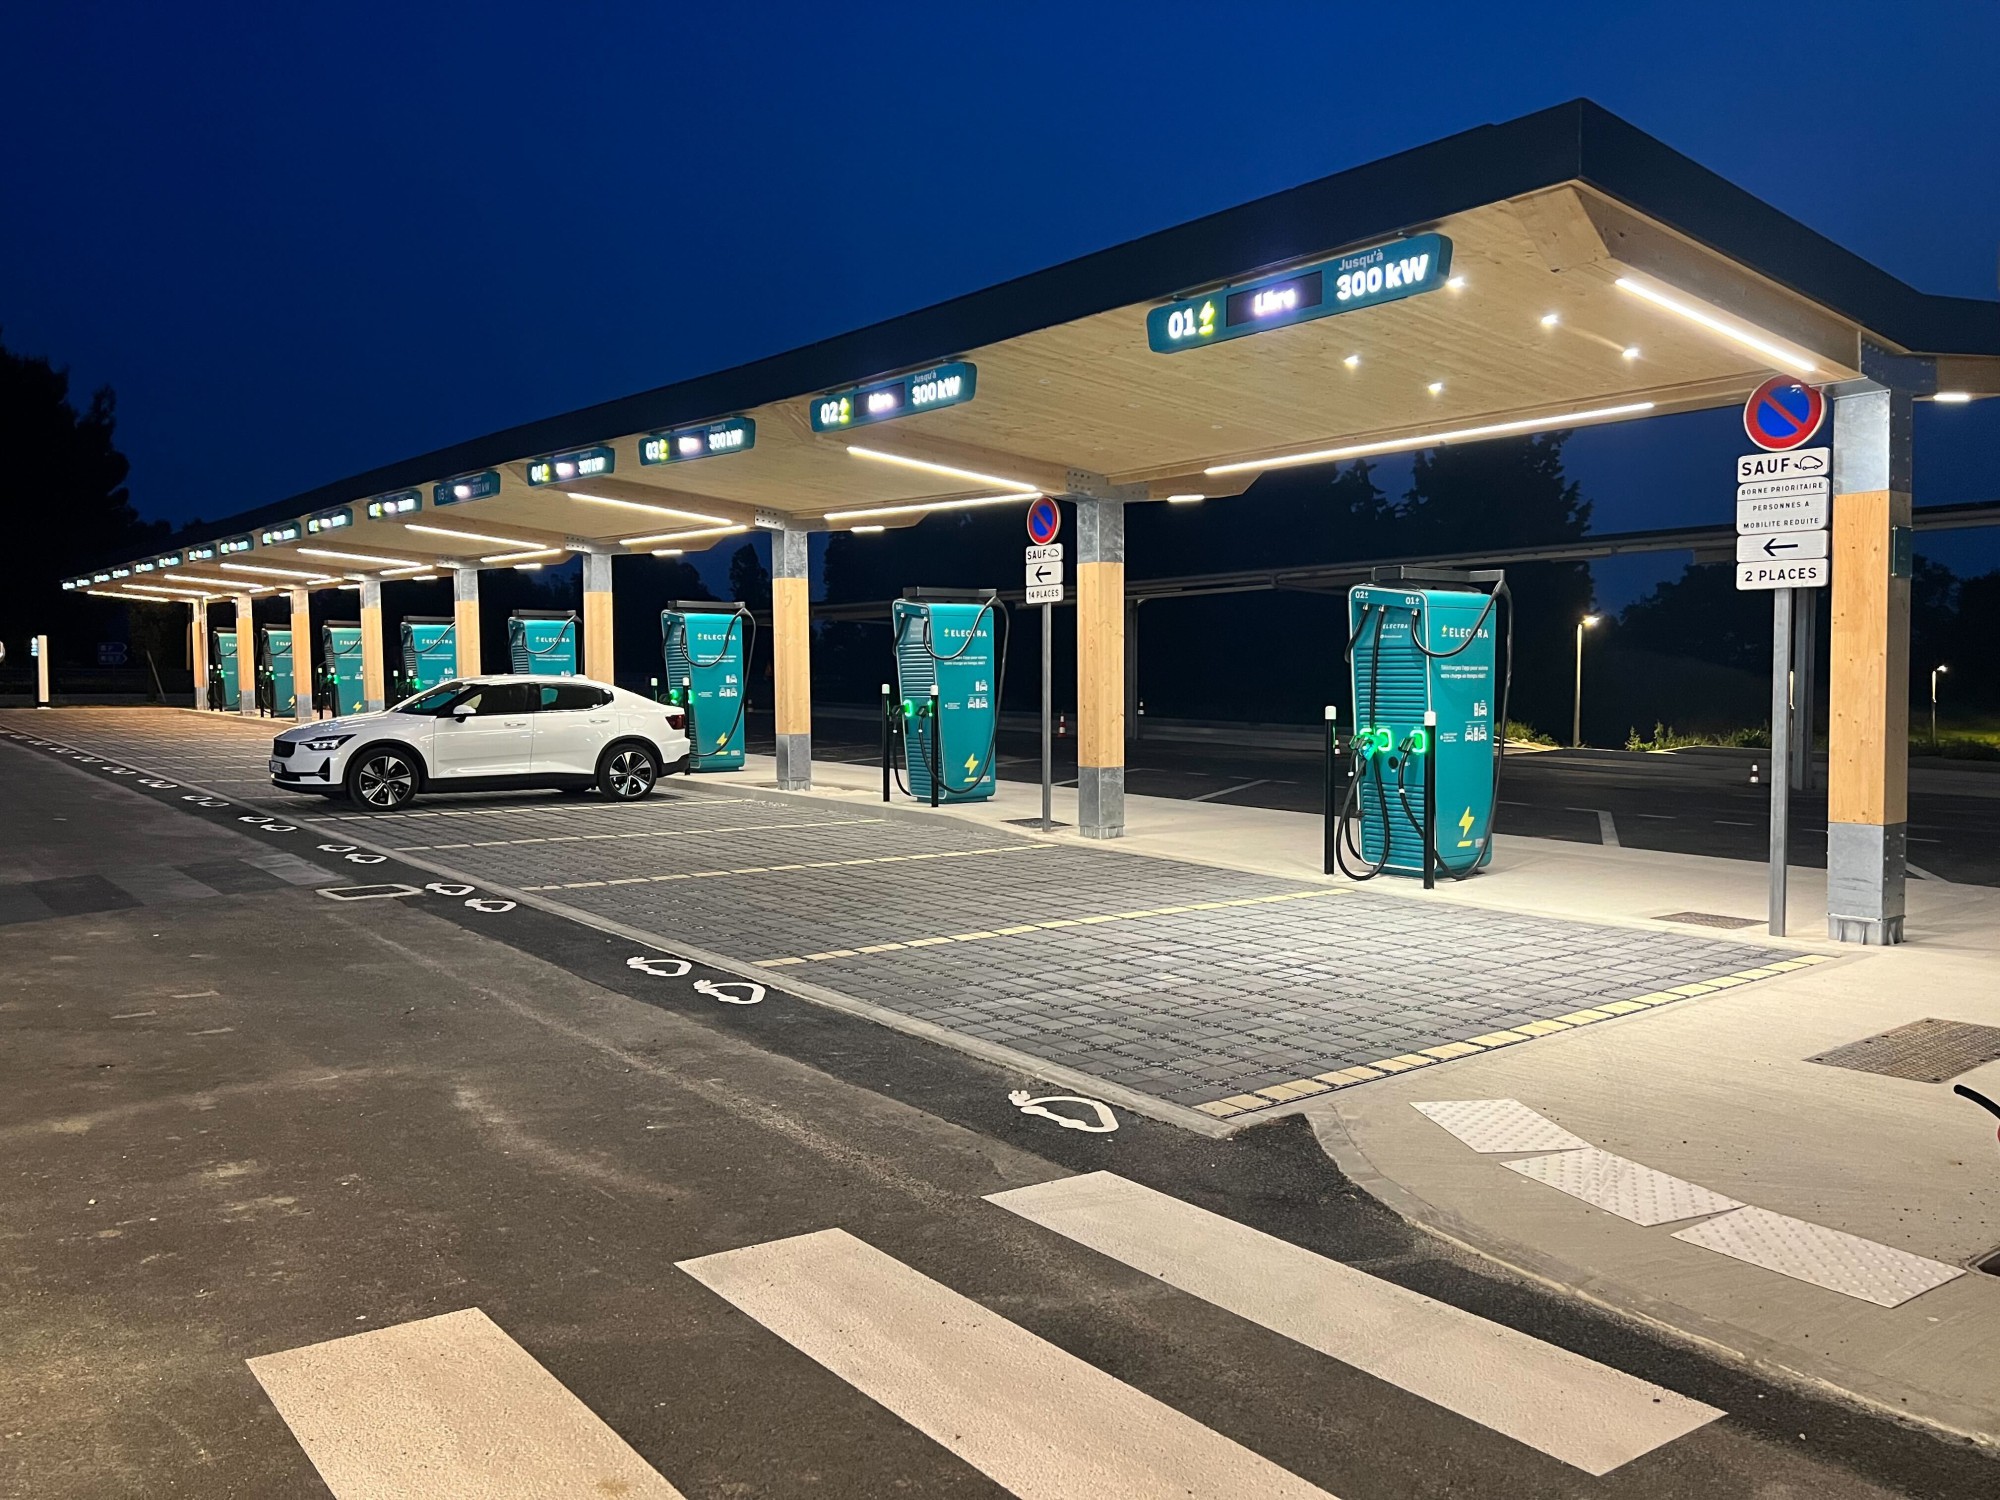 France - 7 stations de recharge ultra-rapide Electra ouvertes  sur le réseau VINCI Autoroutes 